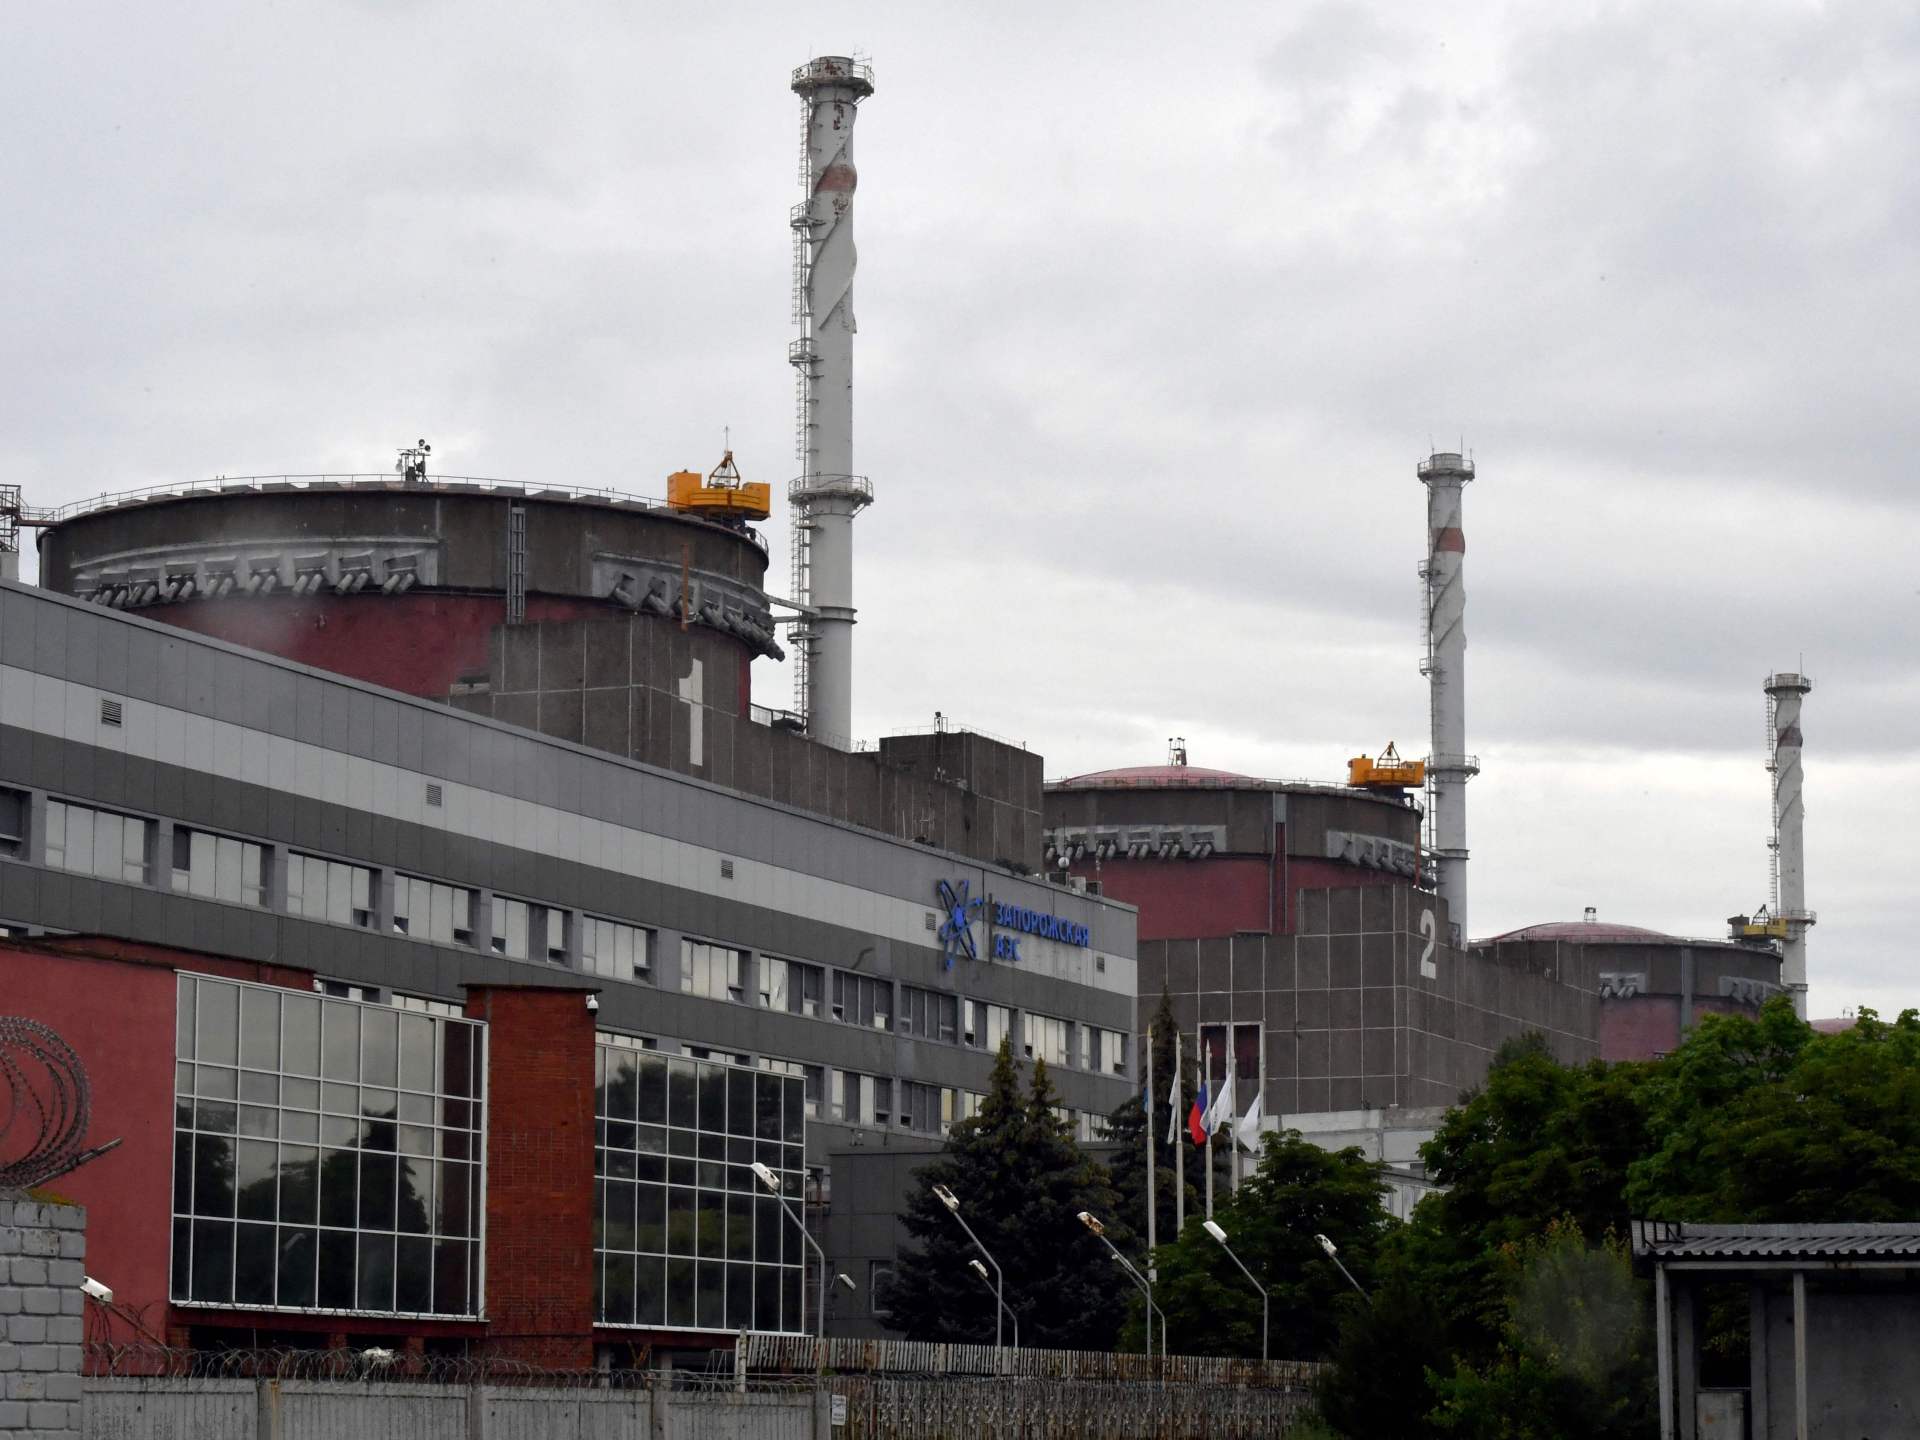 روسيا تتهم أوكرانيا بمهاجمة محطة زاباروجيا النووية | أخبار – البوكس نيوز